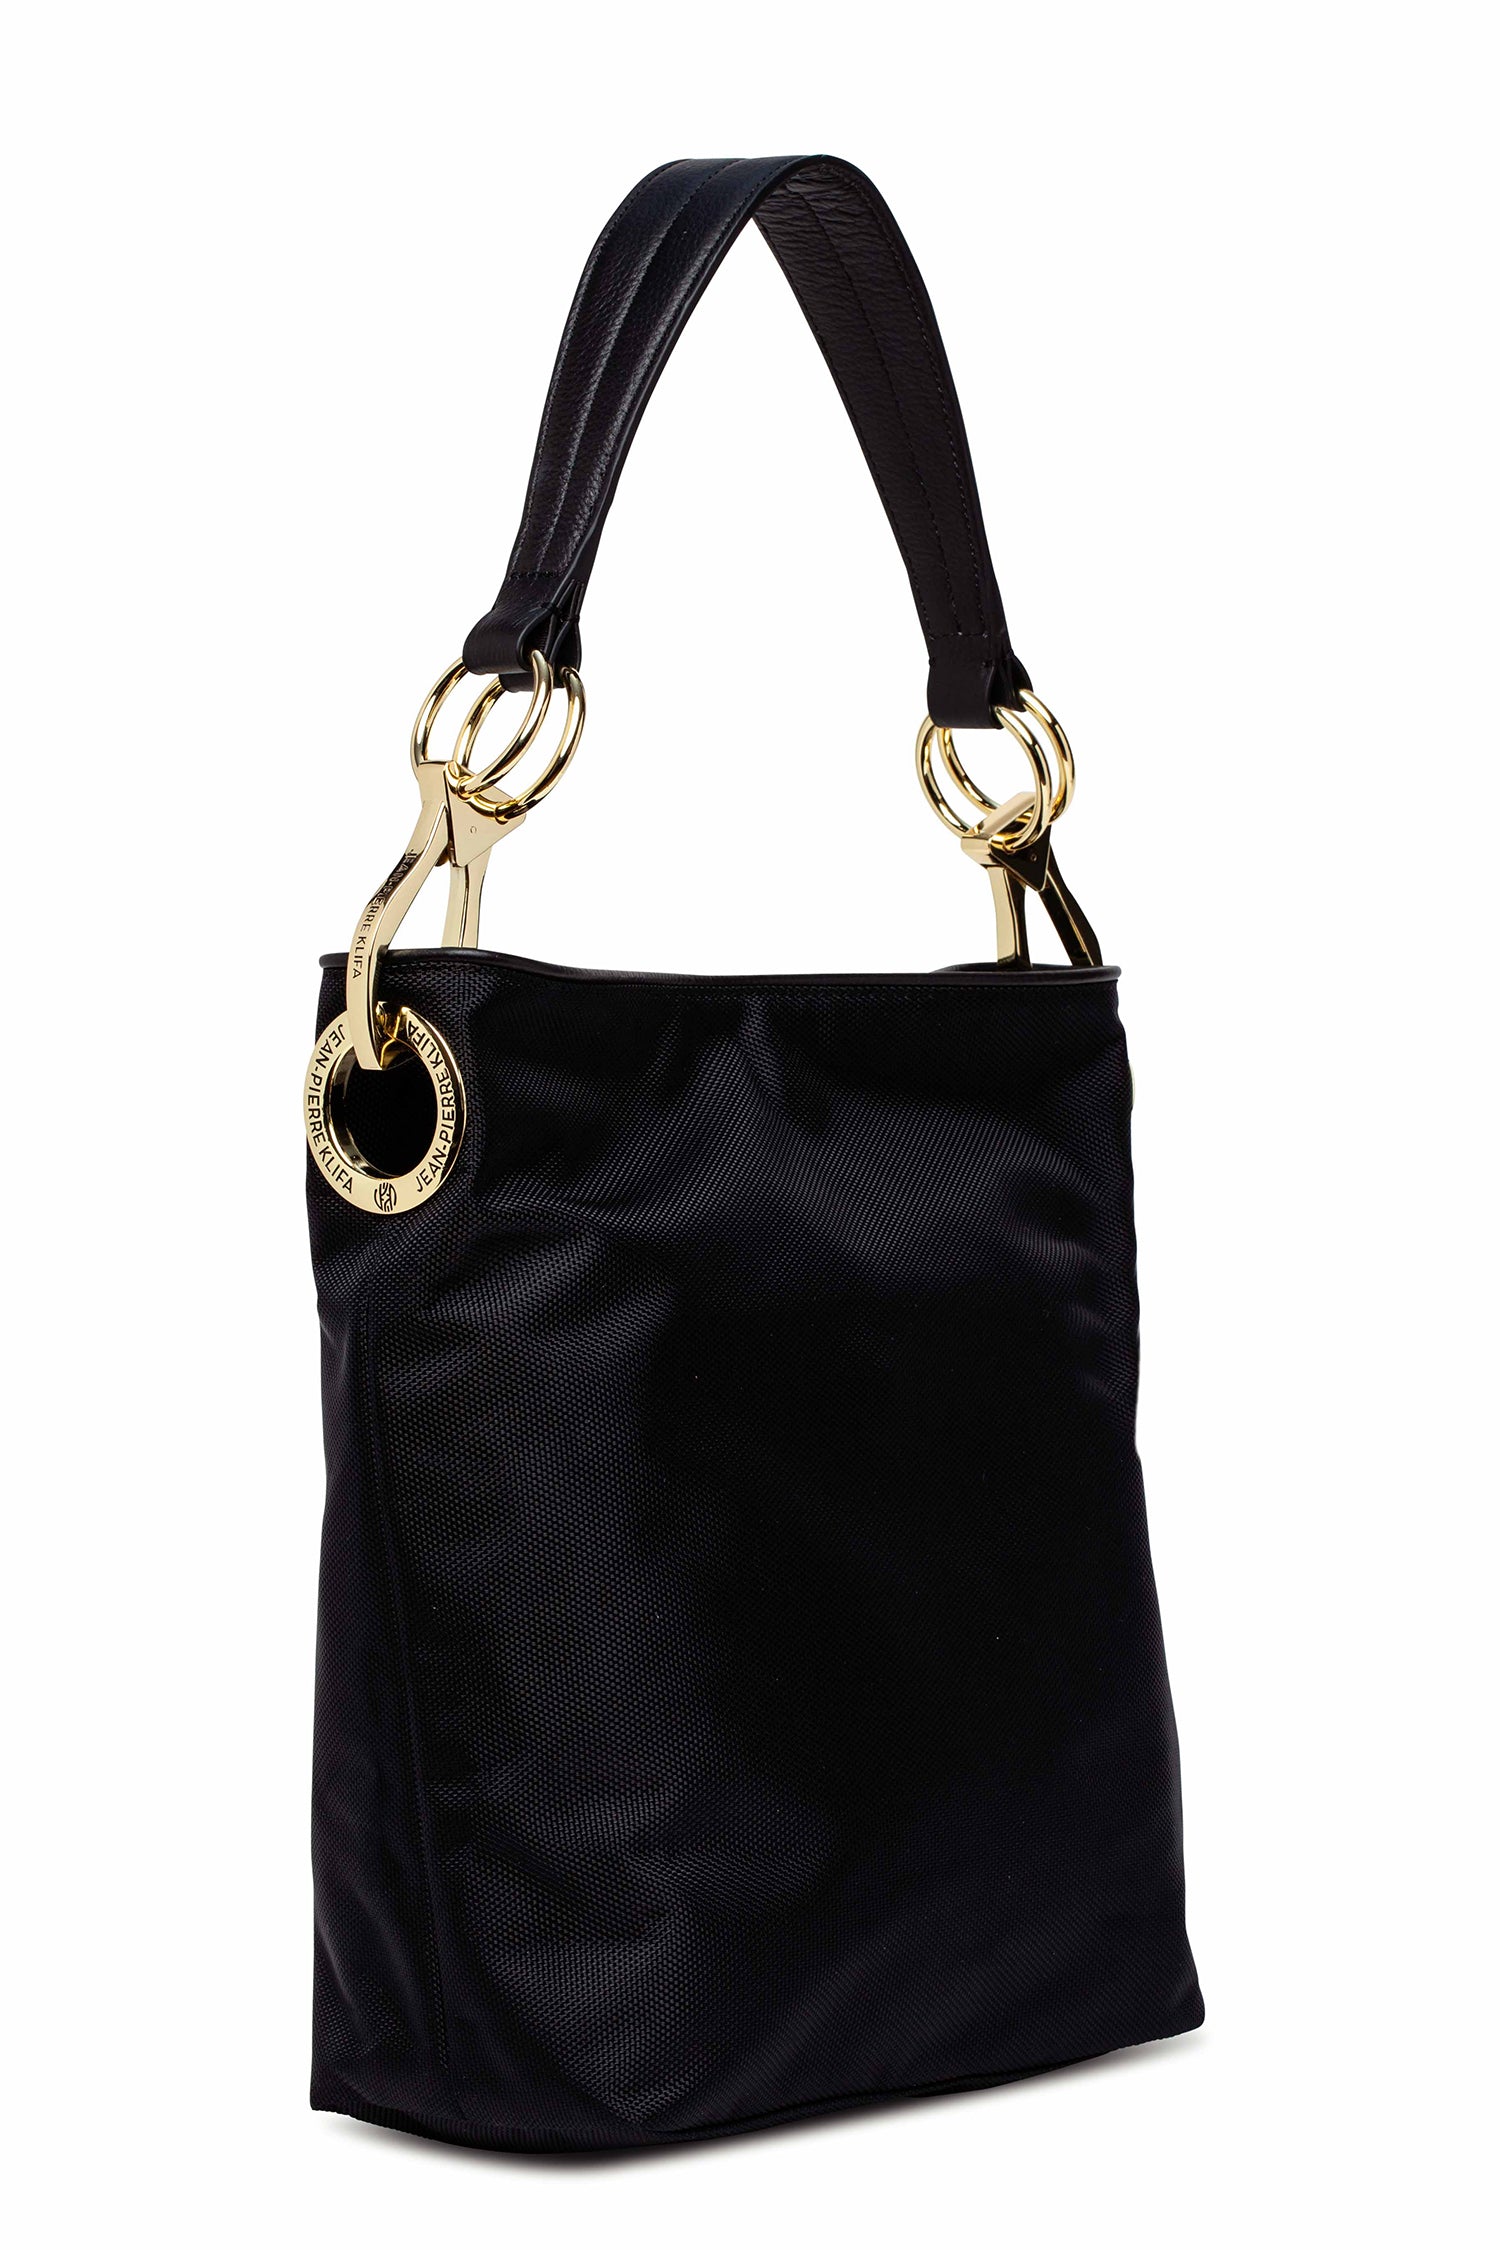 Nylon Bucket Bag Black Handbag Jean-Pierre Klifa   